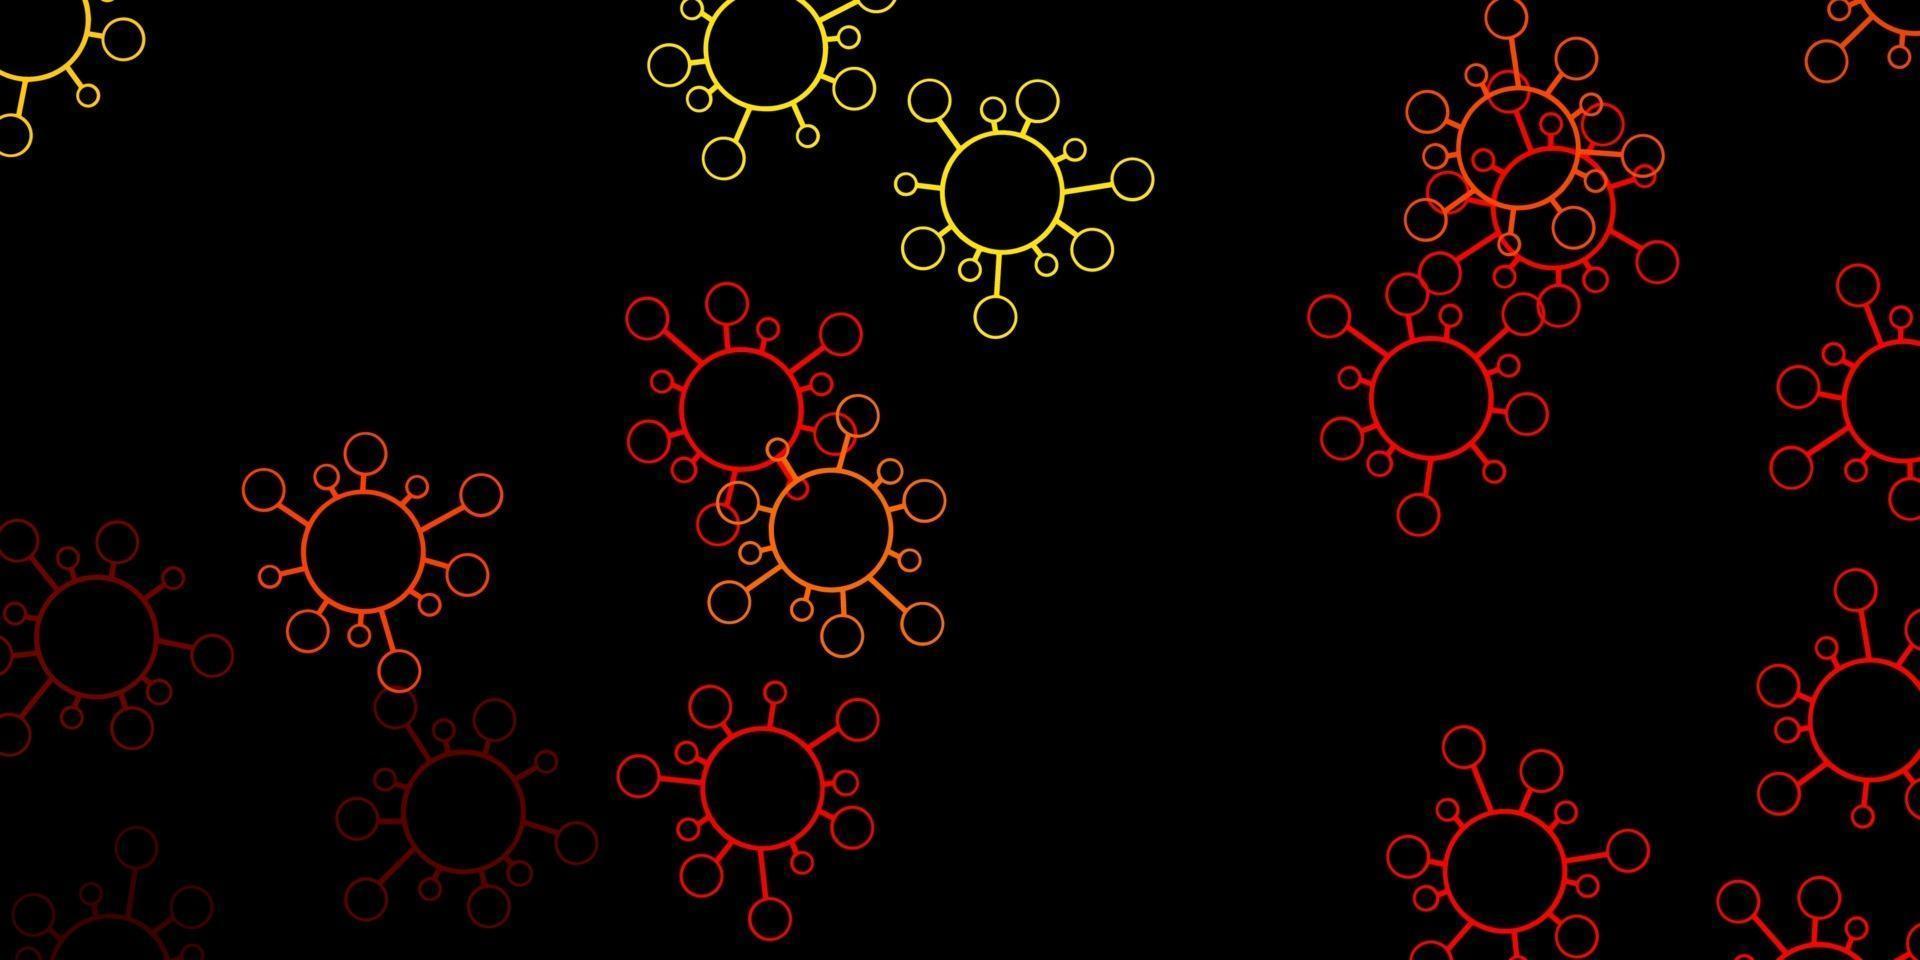 toile de fond de vecteur rouge et jaune foncé avec des symboles de virus.